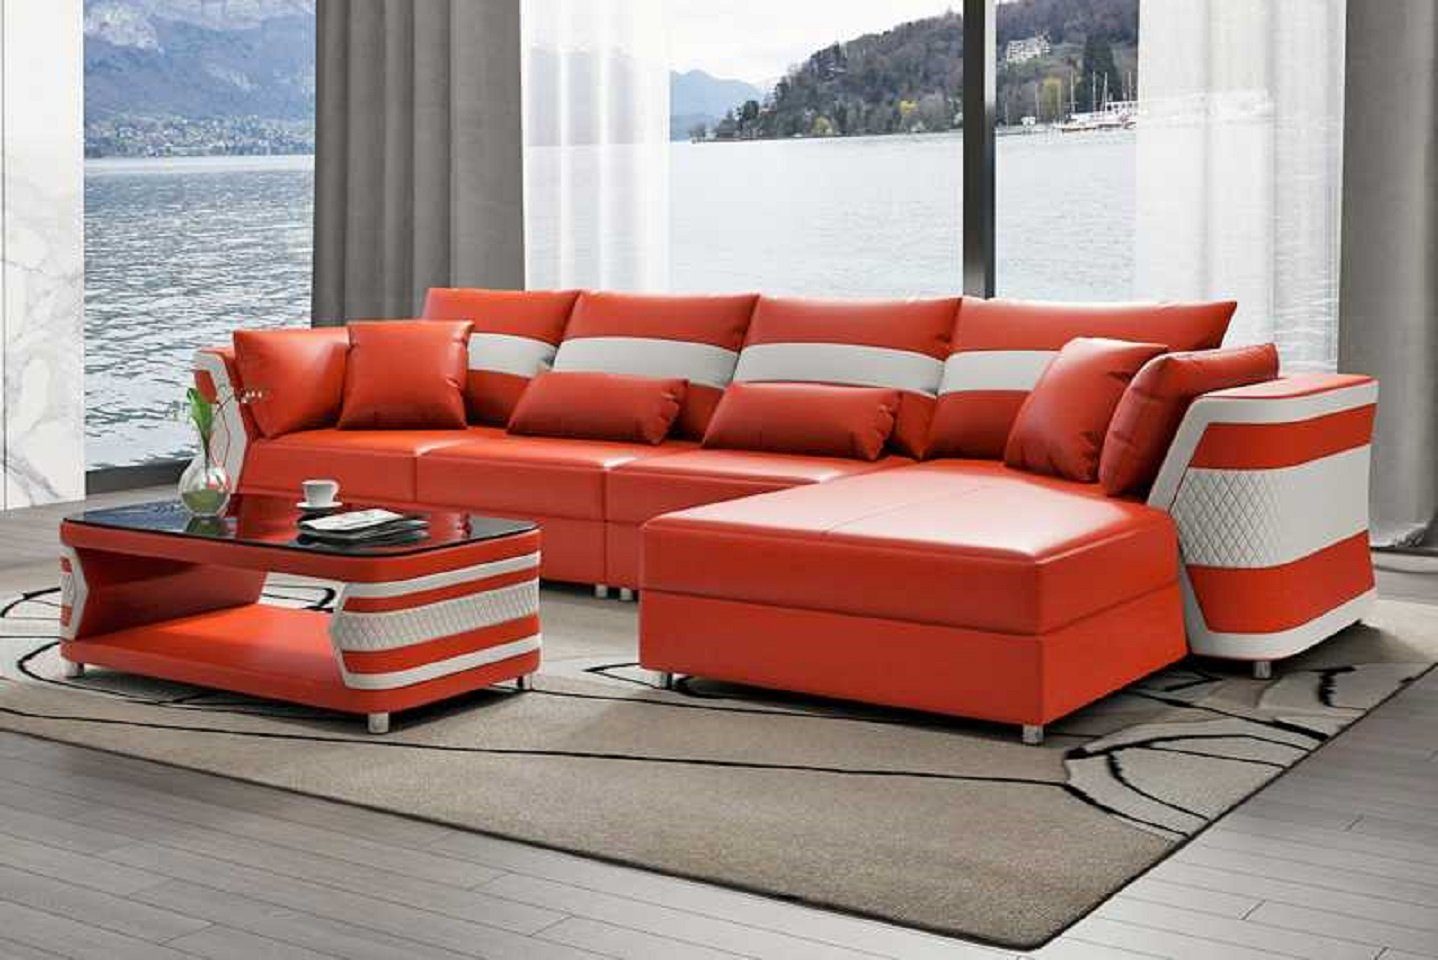 JVmoebel Ecksofa Wohnzimmer Ecksofa L Form Couch Sofa Luxus Moderne Eckgarnitur, 3 Teile, Made in Europe Orange